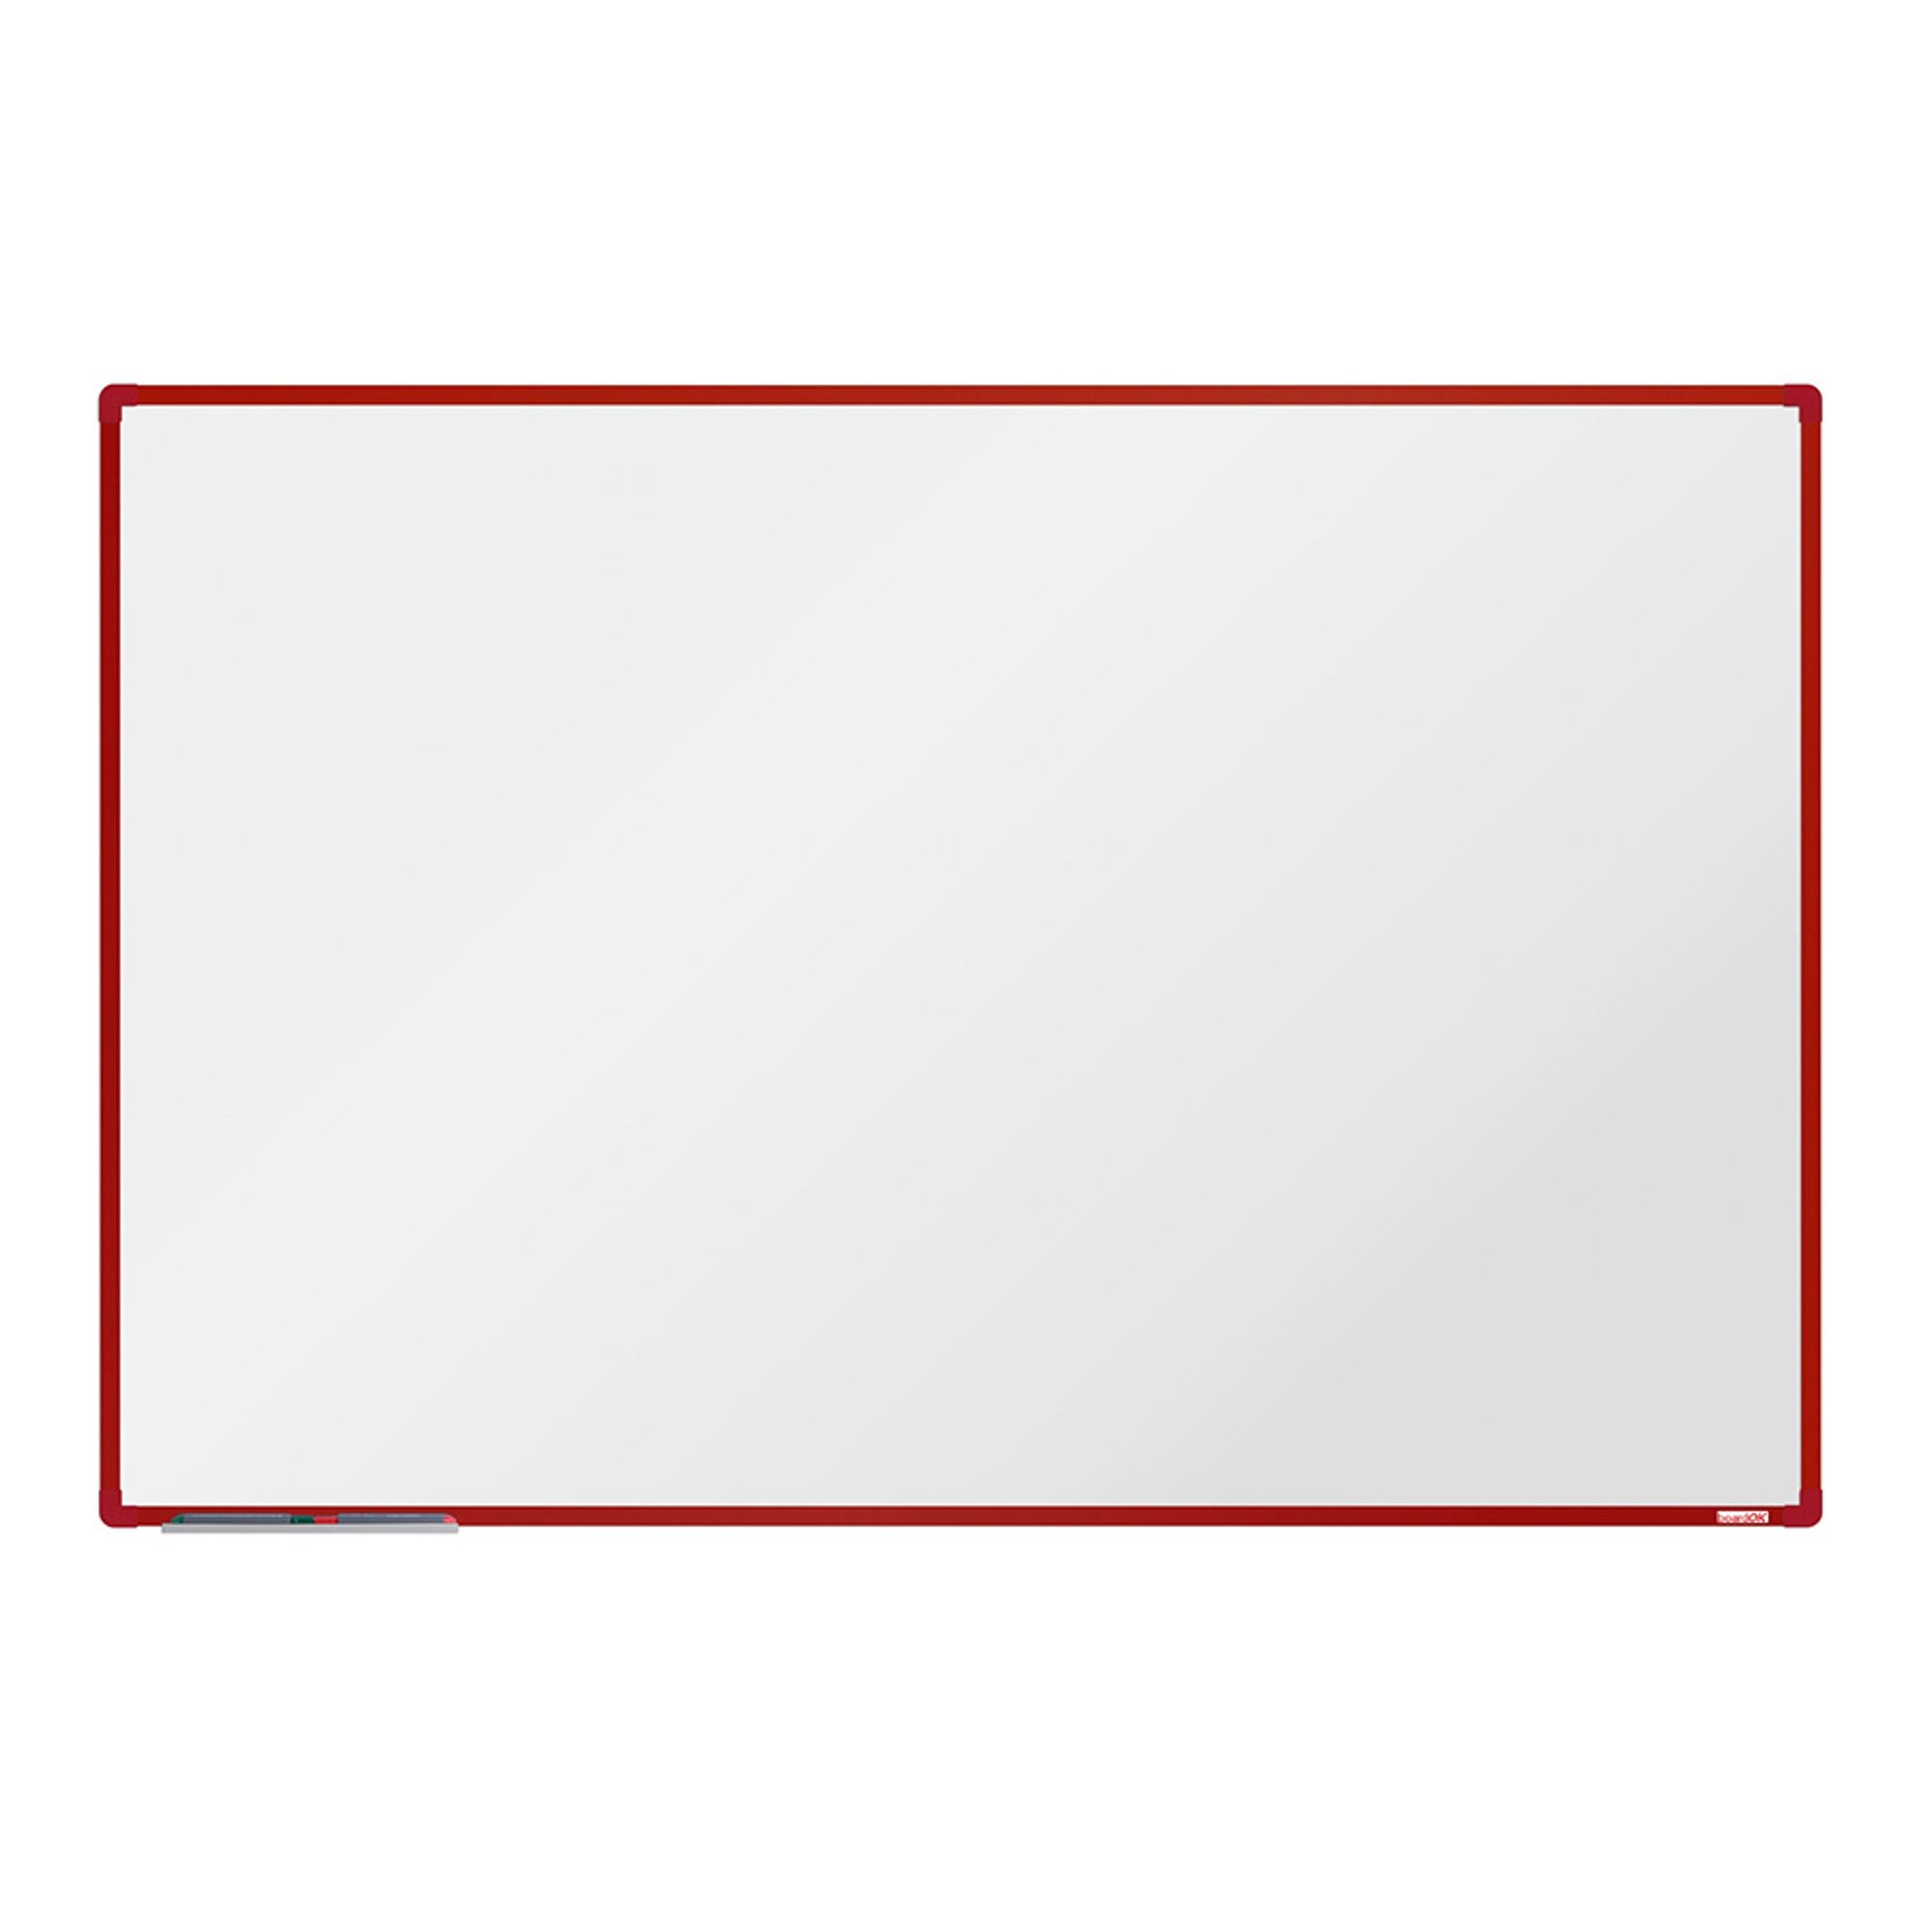 Biela magnetická popisovacia tabuľa boardOK, 1800 x 1200 mm, červený rám